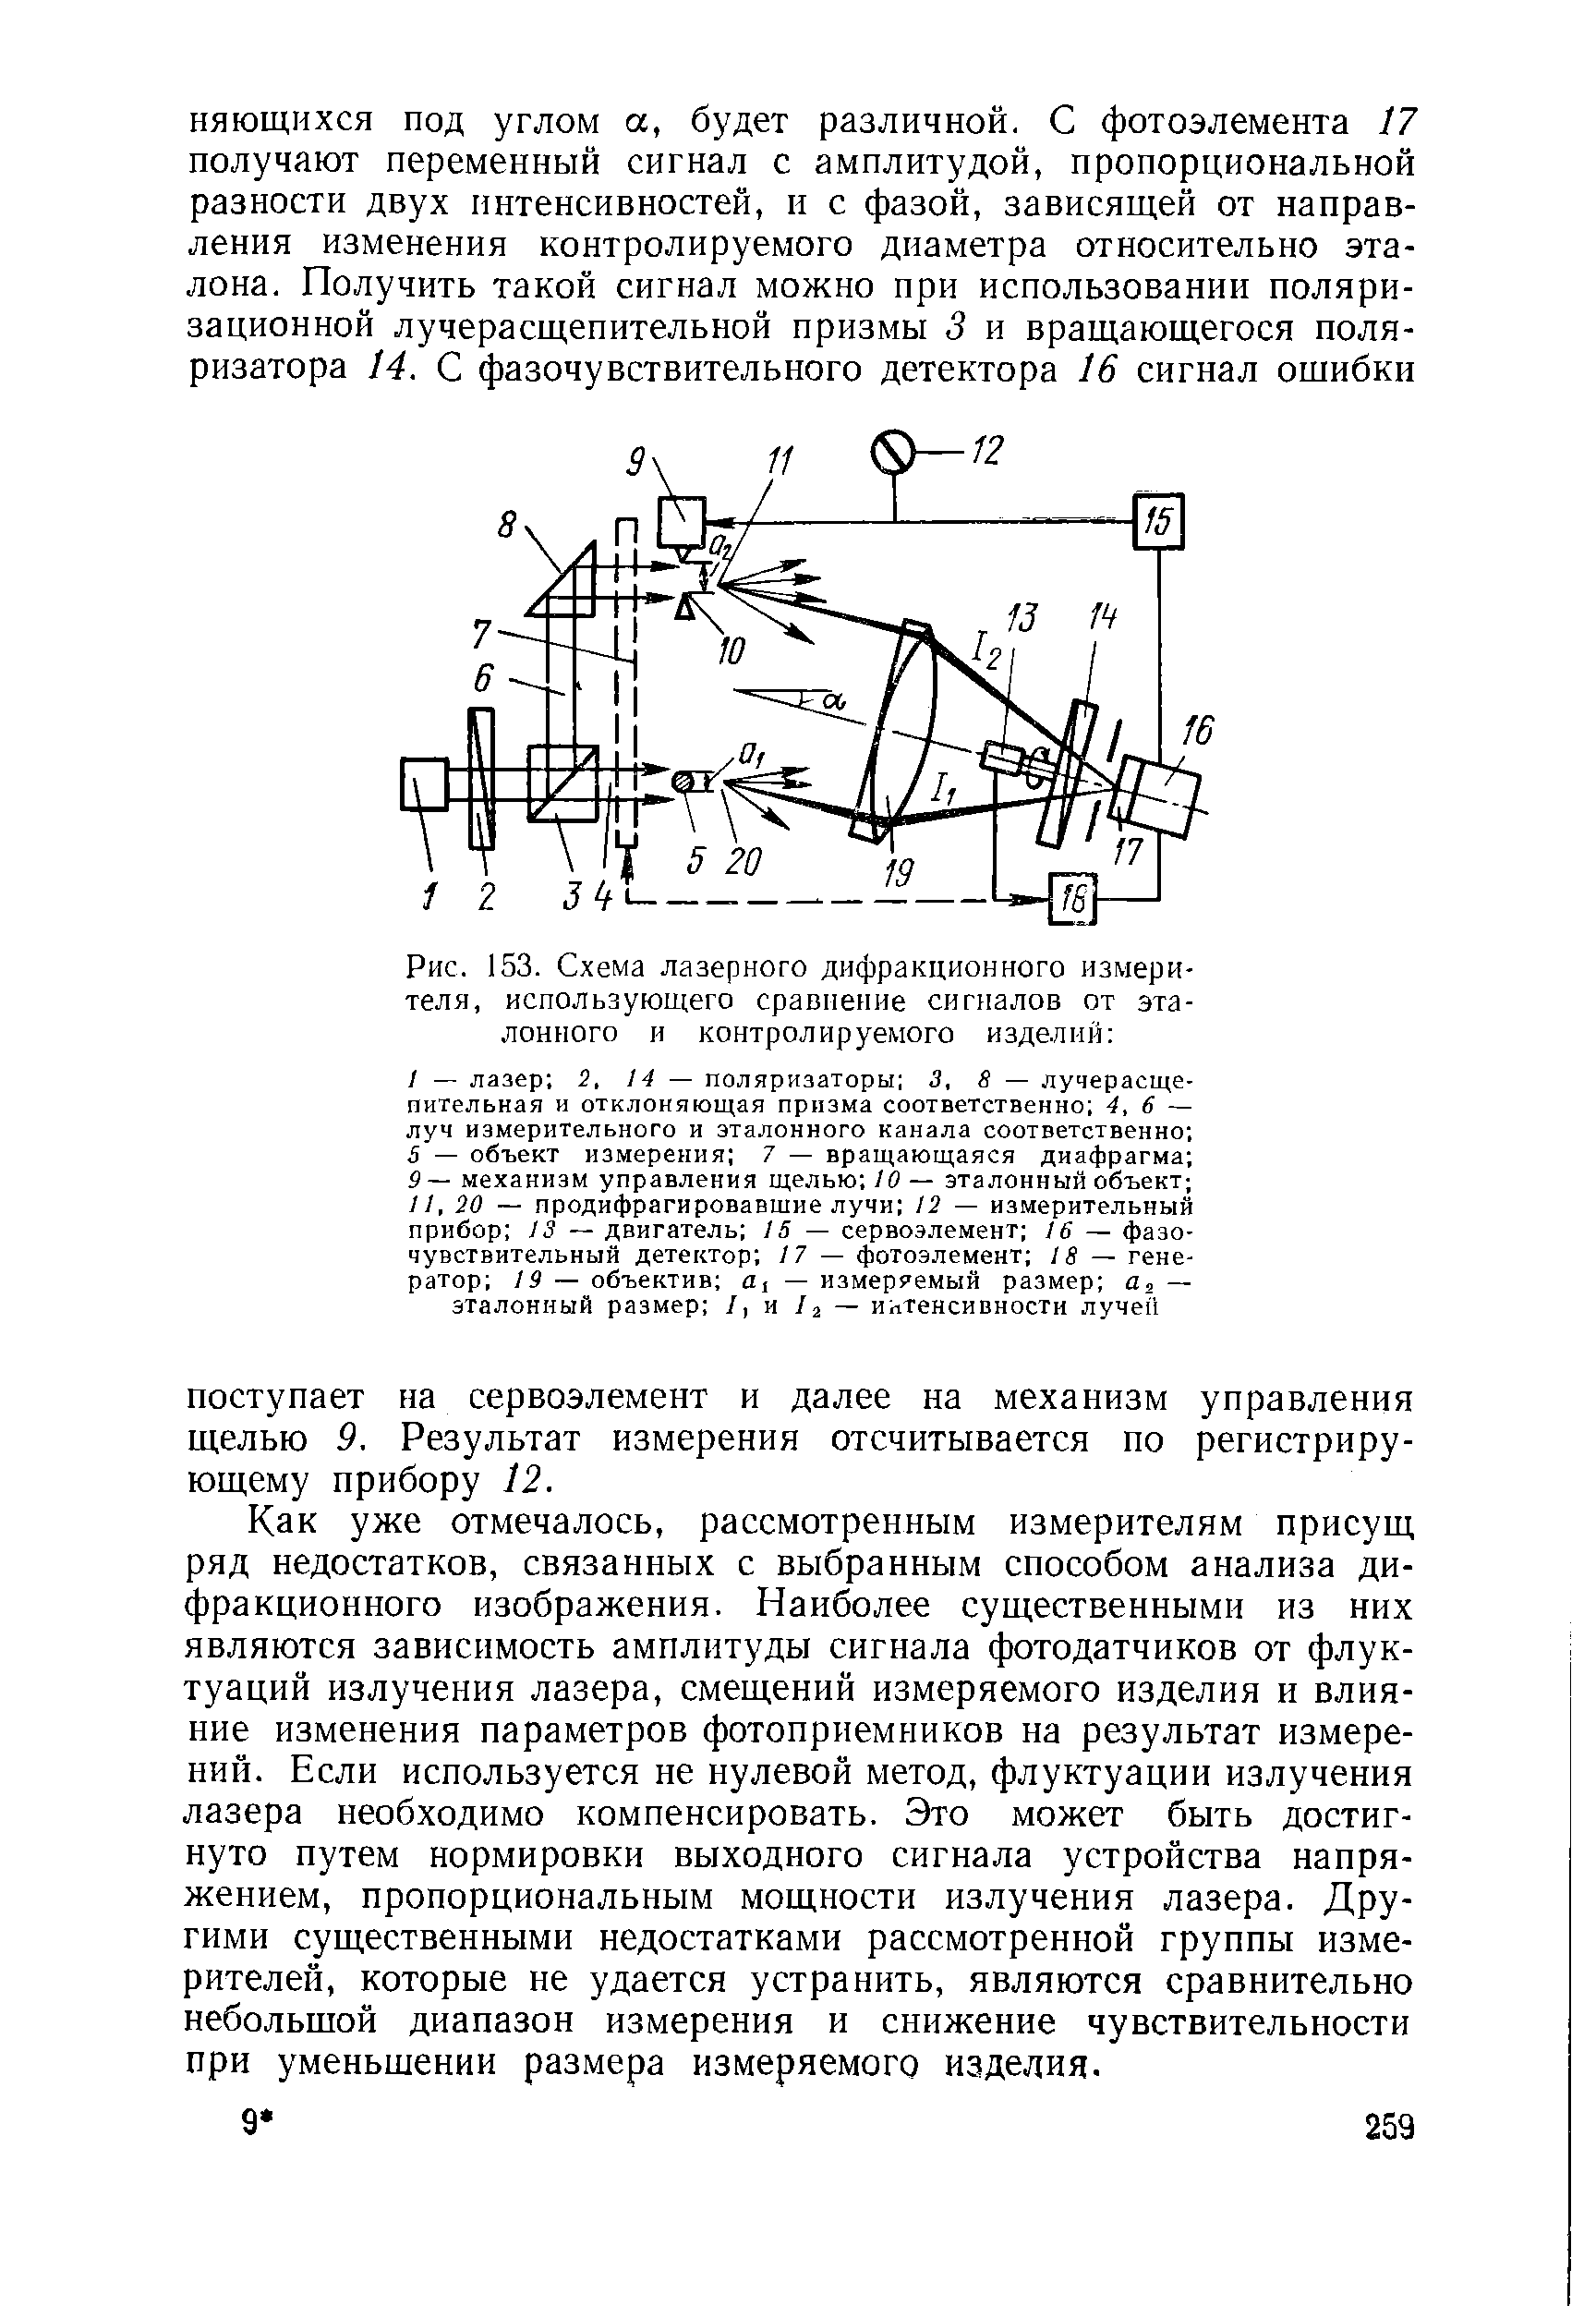 Рис. 153. Схема лазерного дифракционного измерителя, использующего сравнение сигналов от эталонного и контролируемого изделий 
